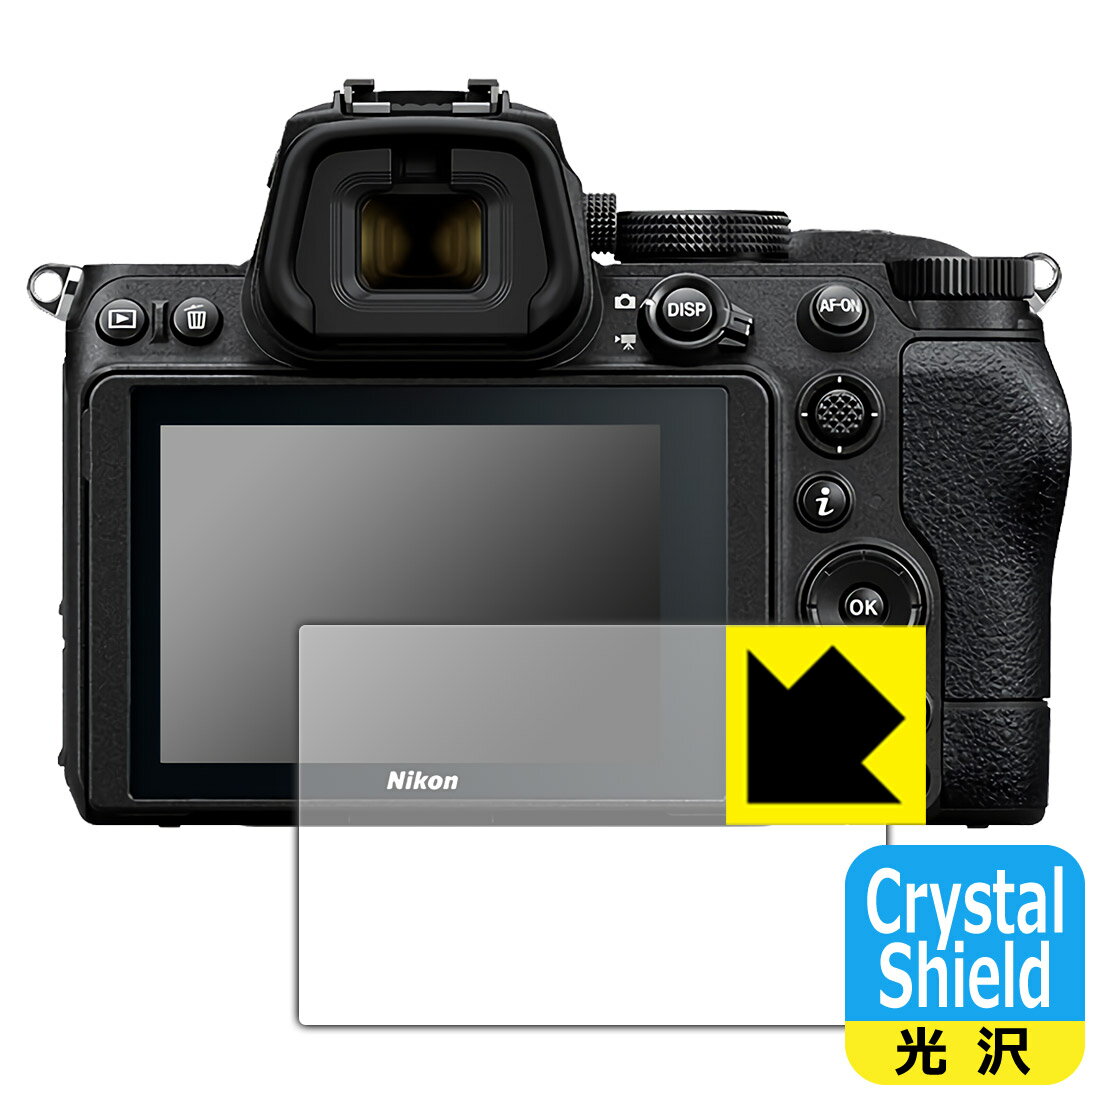 【1000円ポッキリ】【ポイント5倍】Crystal Shield Nikon Z5 日本製 自社製造直販